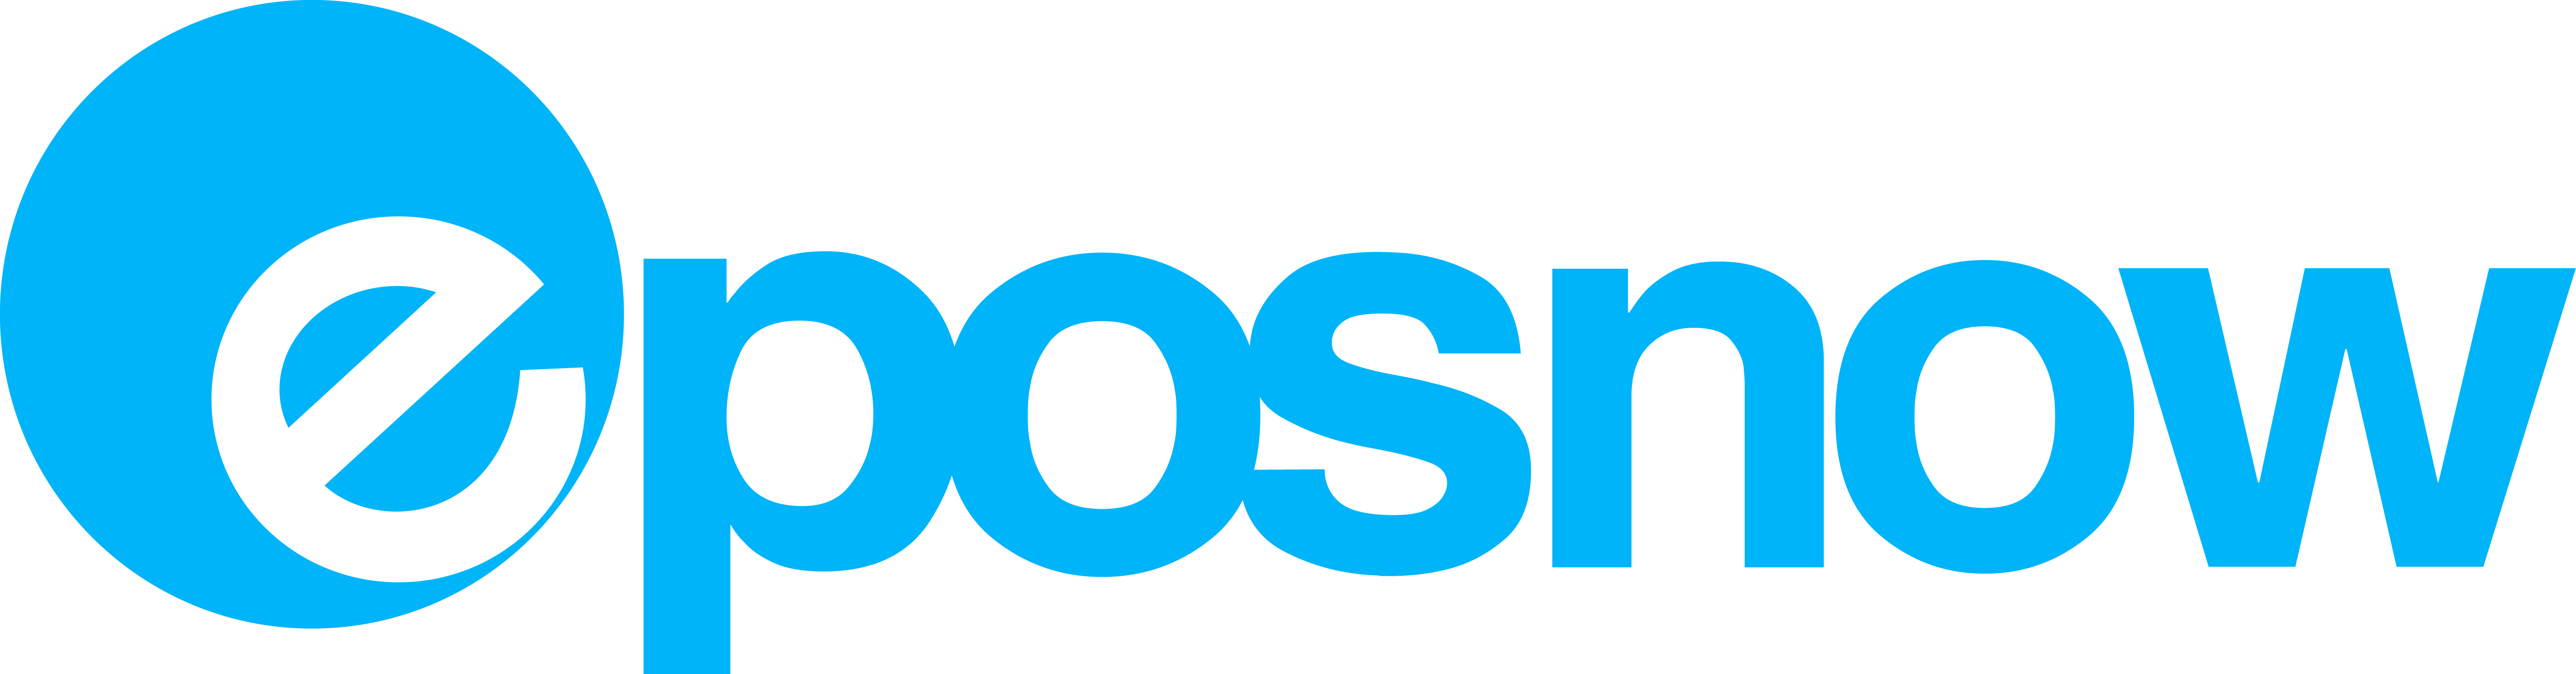 Epos Now 300dpi Blue Logo